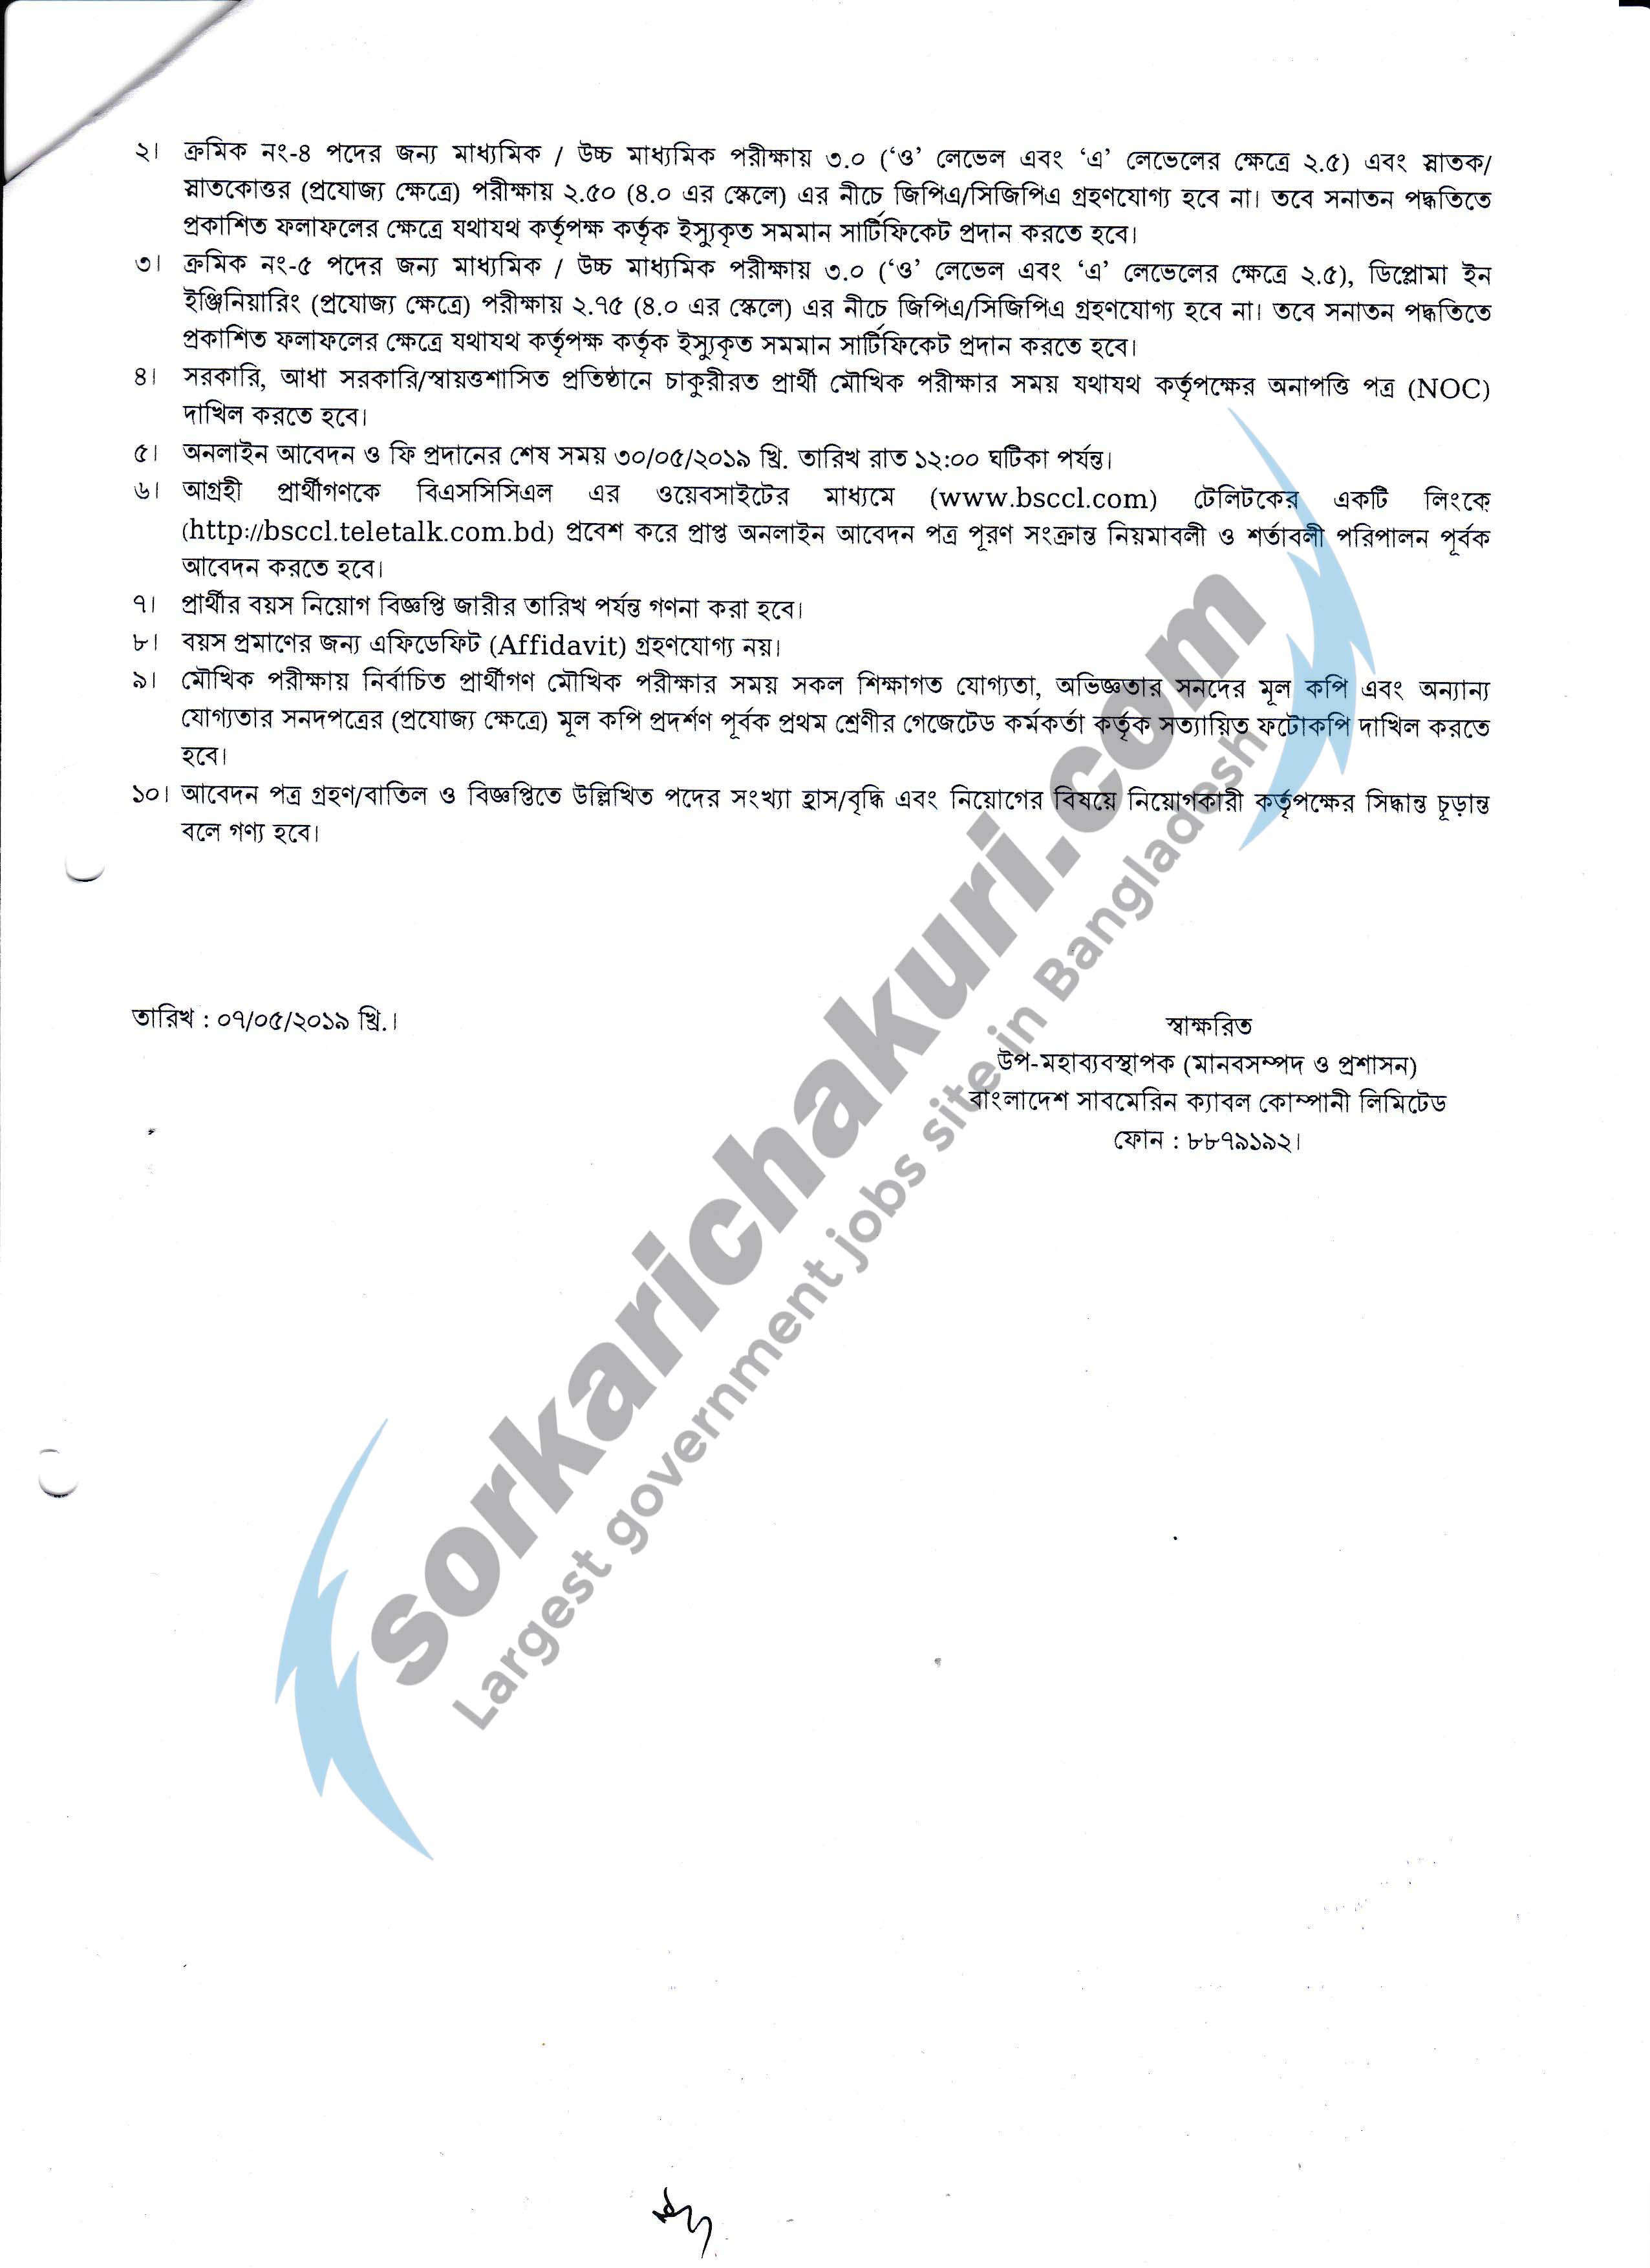 Bangladesh Submarine Cable Company Limited Jobs Circular 2019